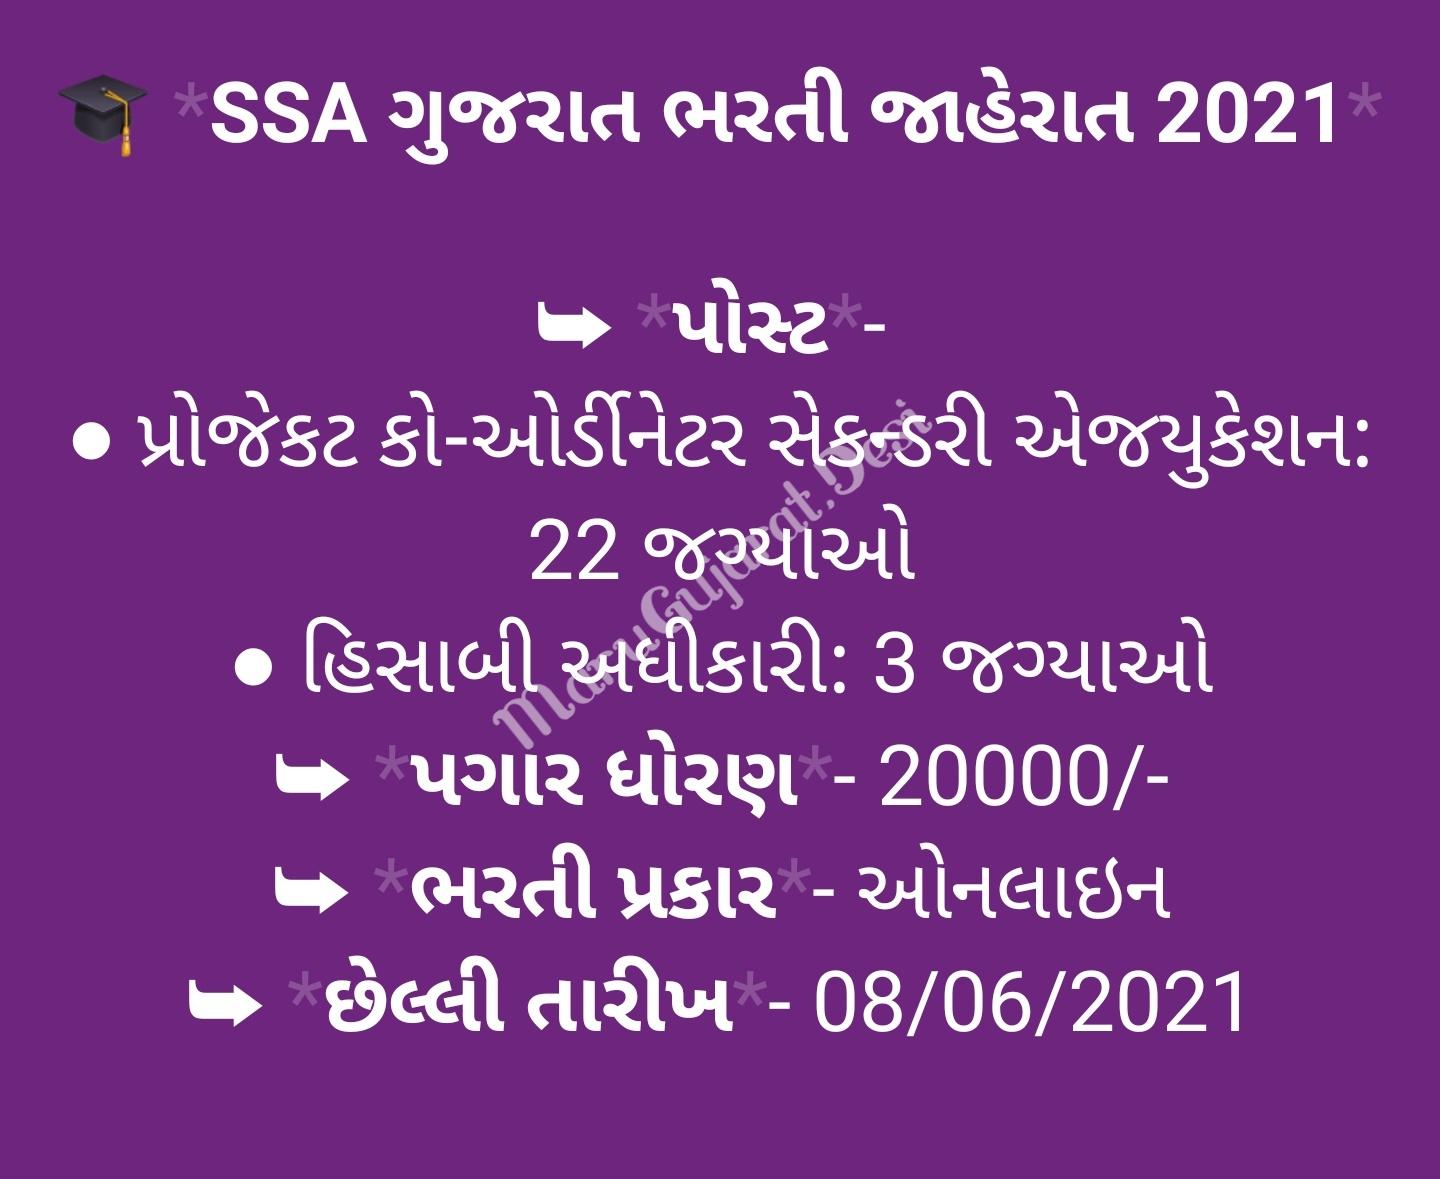 SSA Gujarat New Recruitment Announcement 2021